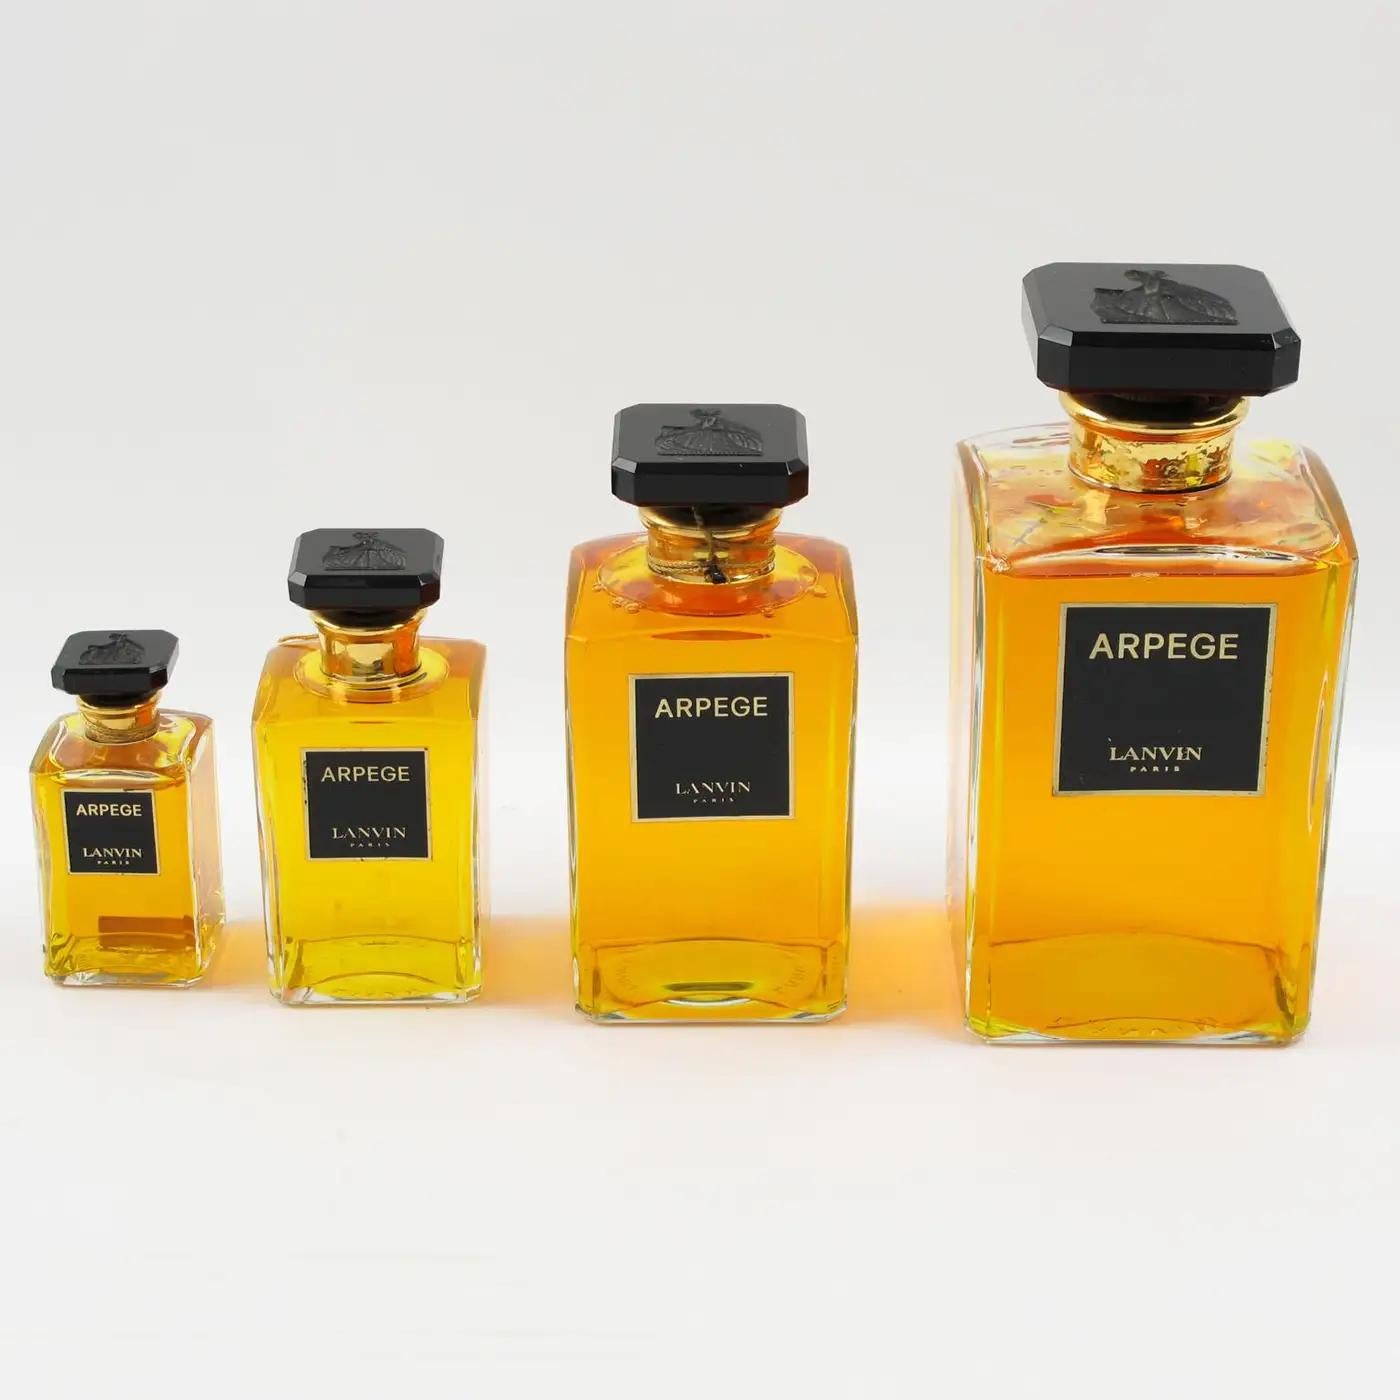 Il s'agit d'un magnifique ensemble de quatre flacons de cristal en factice pour la présentation des parfums Lanvin dans les magasins de détail. Ce set a été créé uniquement pour une utilisation promotionnelle en tant que présentoir de magasin. Les